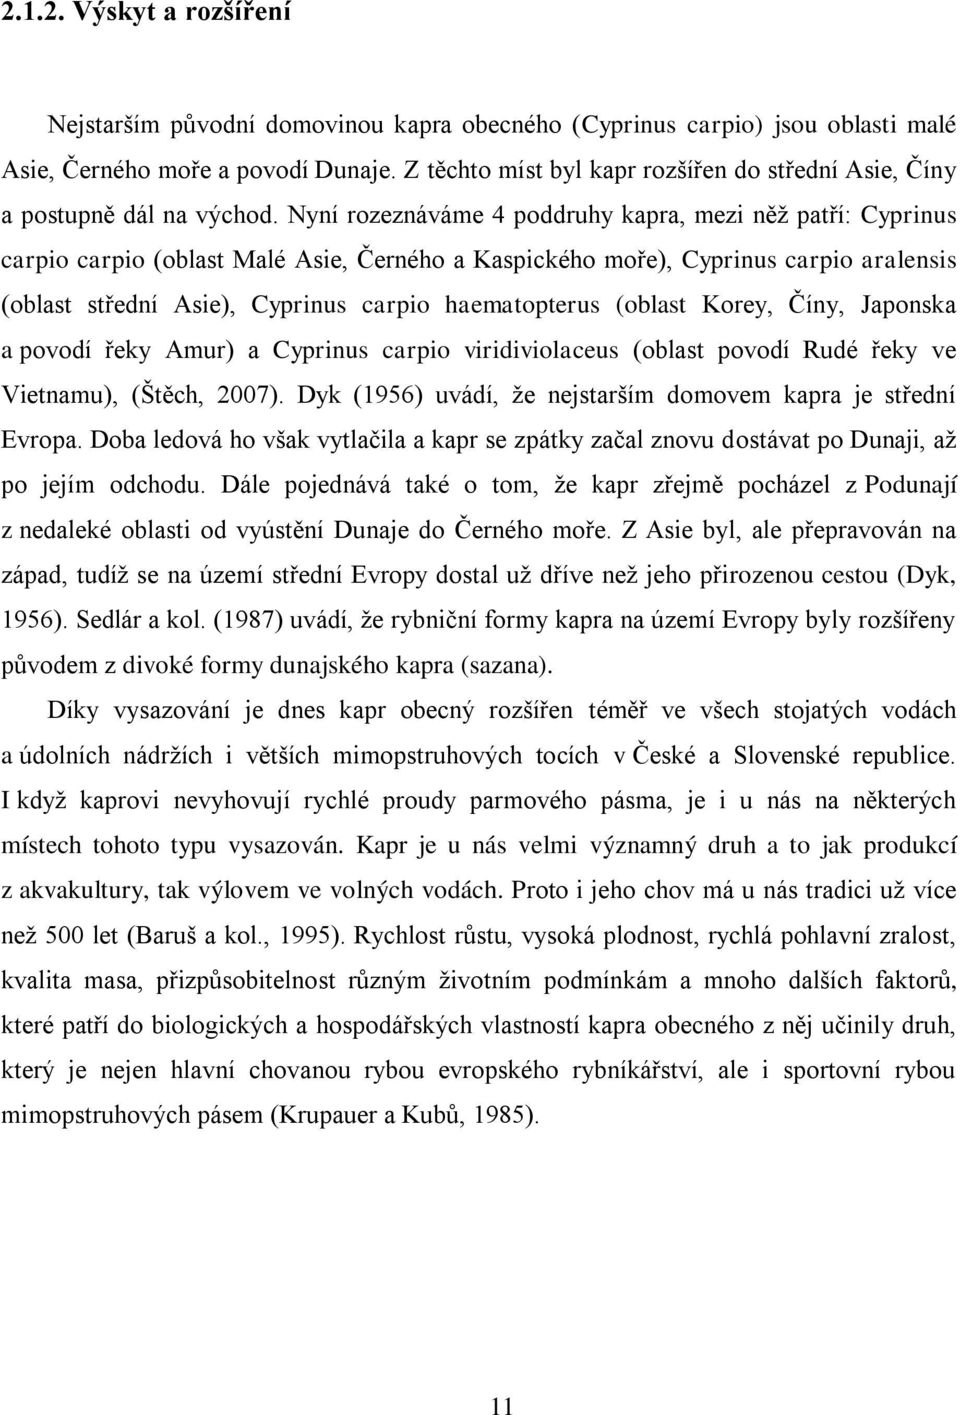 Nyní rozeznáváme 4 poddruhy kapra, mezi něž patří: Cyprinus carpio carpio (oblast Malé Asie, Černého a Kaspického moře), Cyprinus carpio aralensis (oblast střední Asie), Cyprinus carpio haematopterus